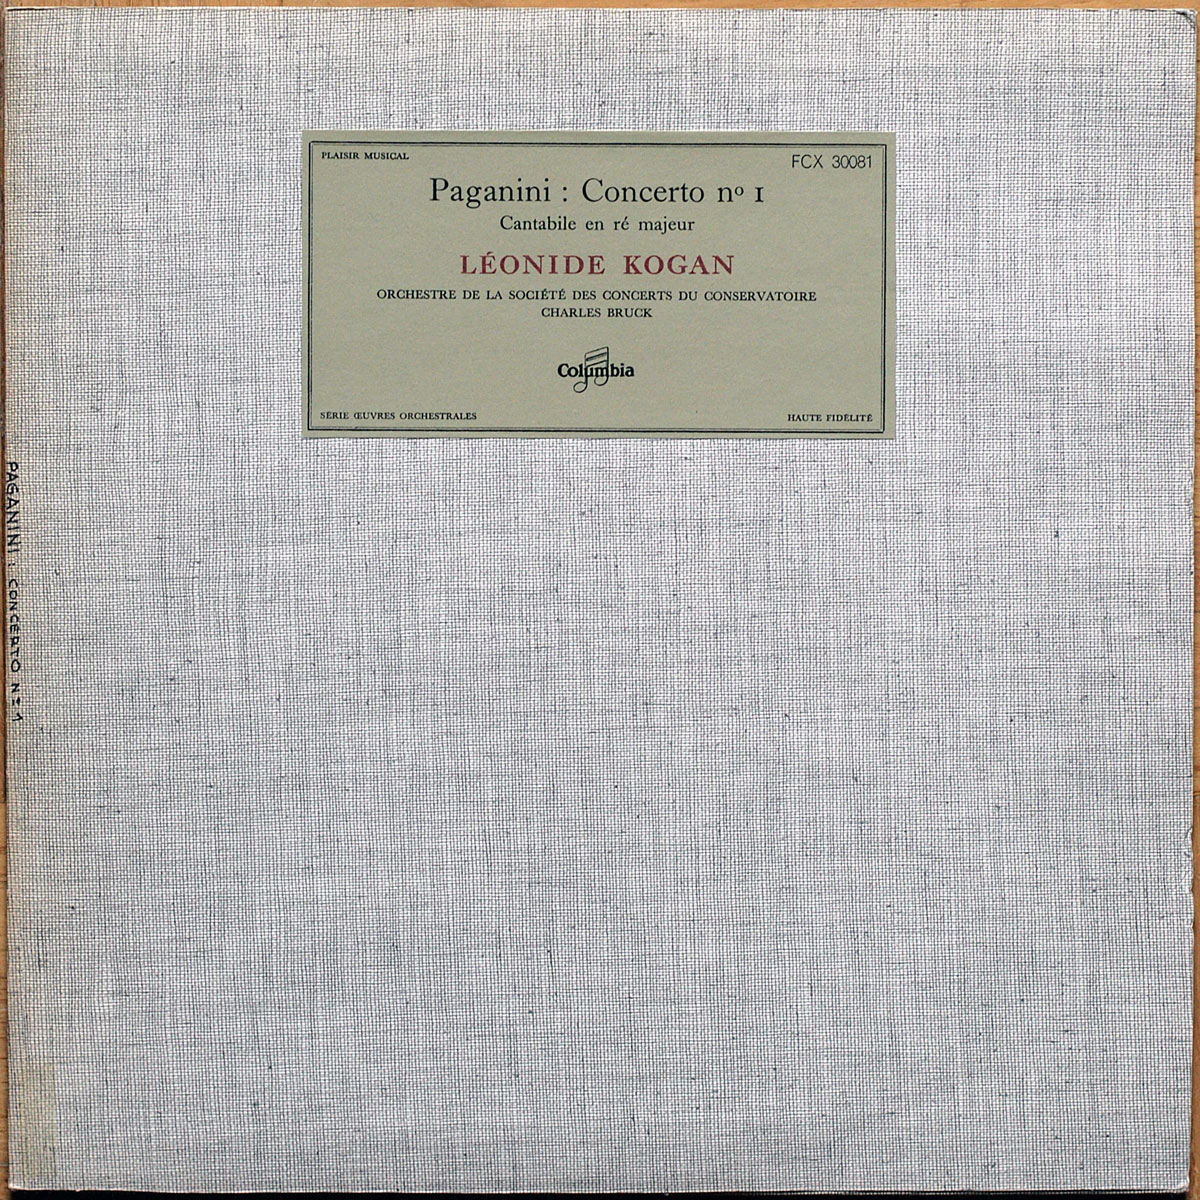 Paganini ‎• Concerto pour violon n° 1 • Cantabile en Ré majeur • Columbia FCX 30081 • Leonide Kogan • Orchestre de la Société des Concerts du Conservatoire • Charles Bruck